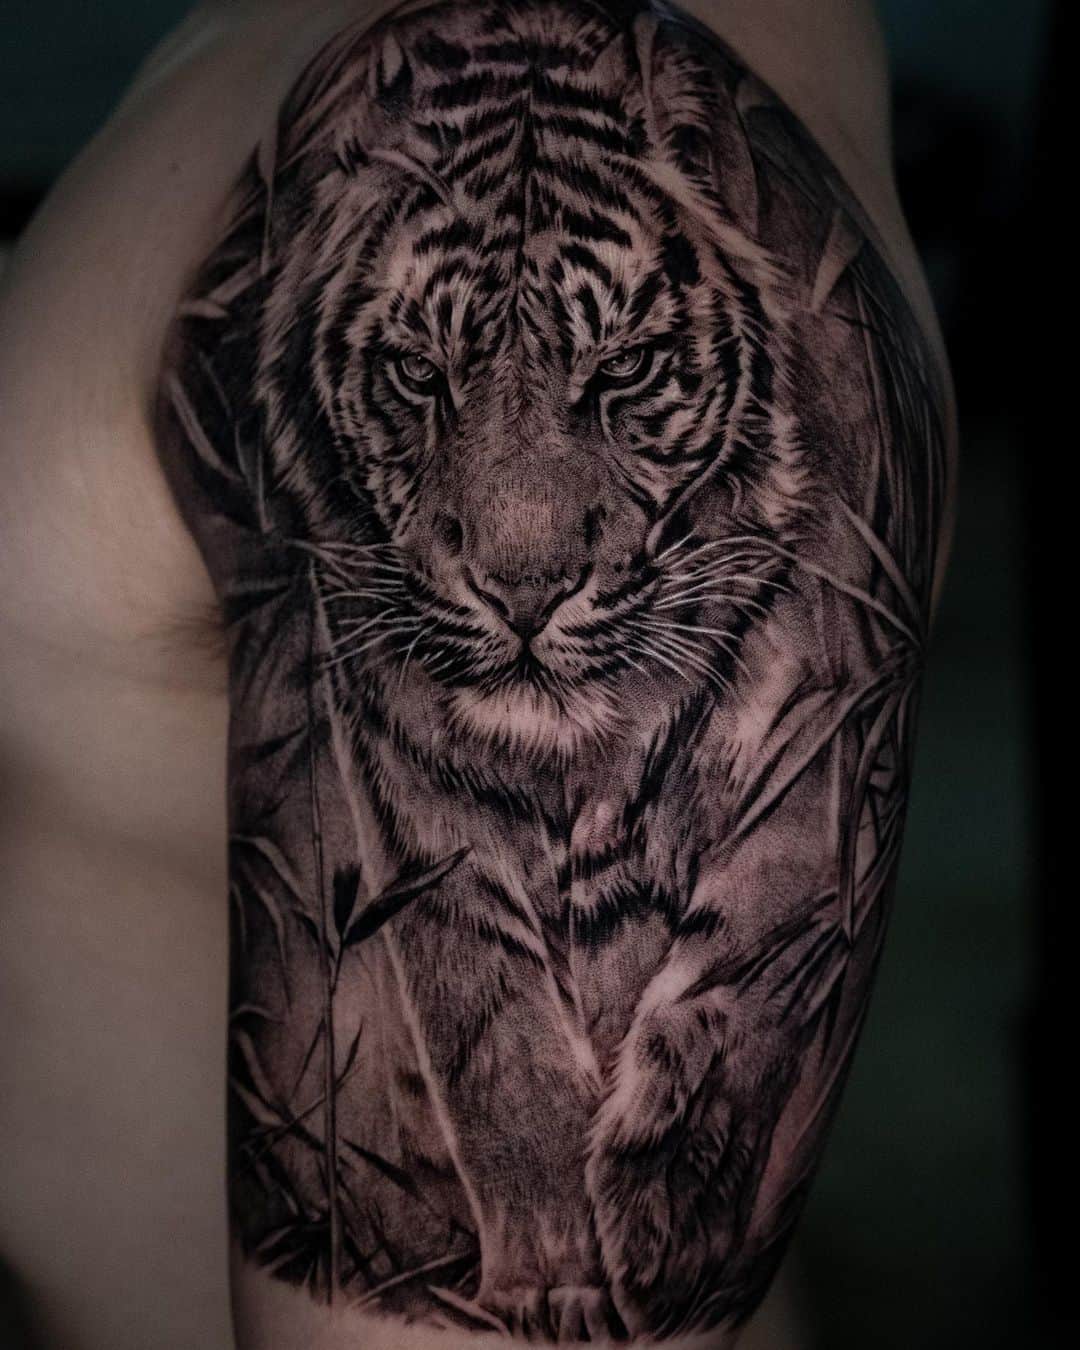 Realistic tiger tattoo design by tattooist bega